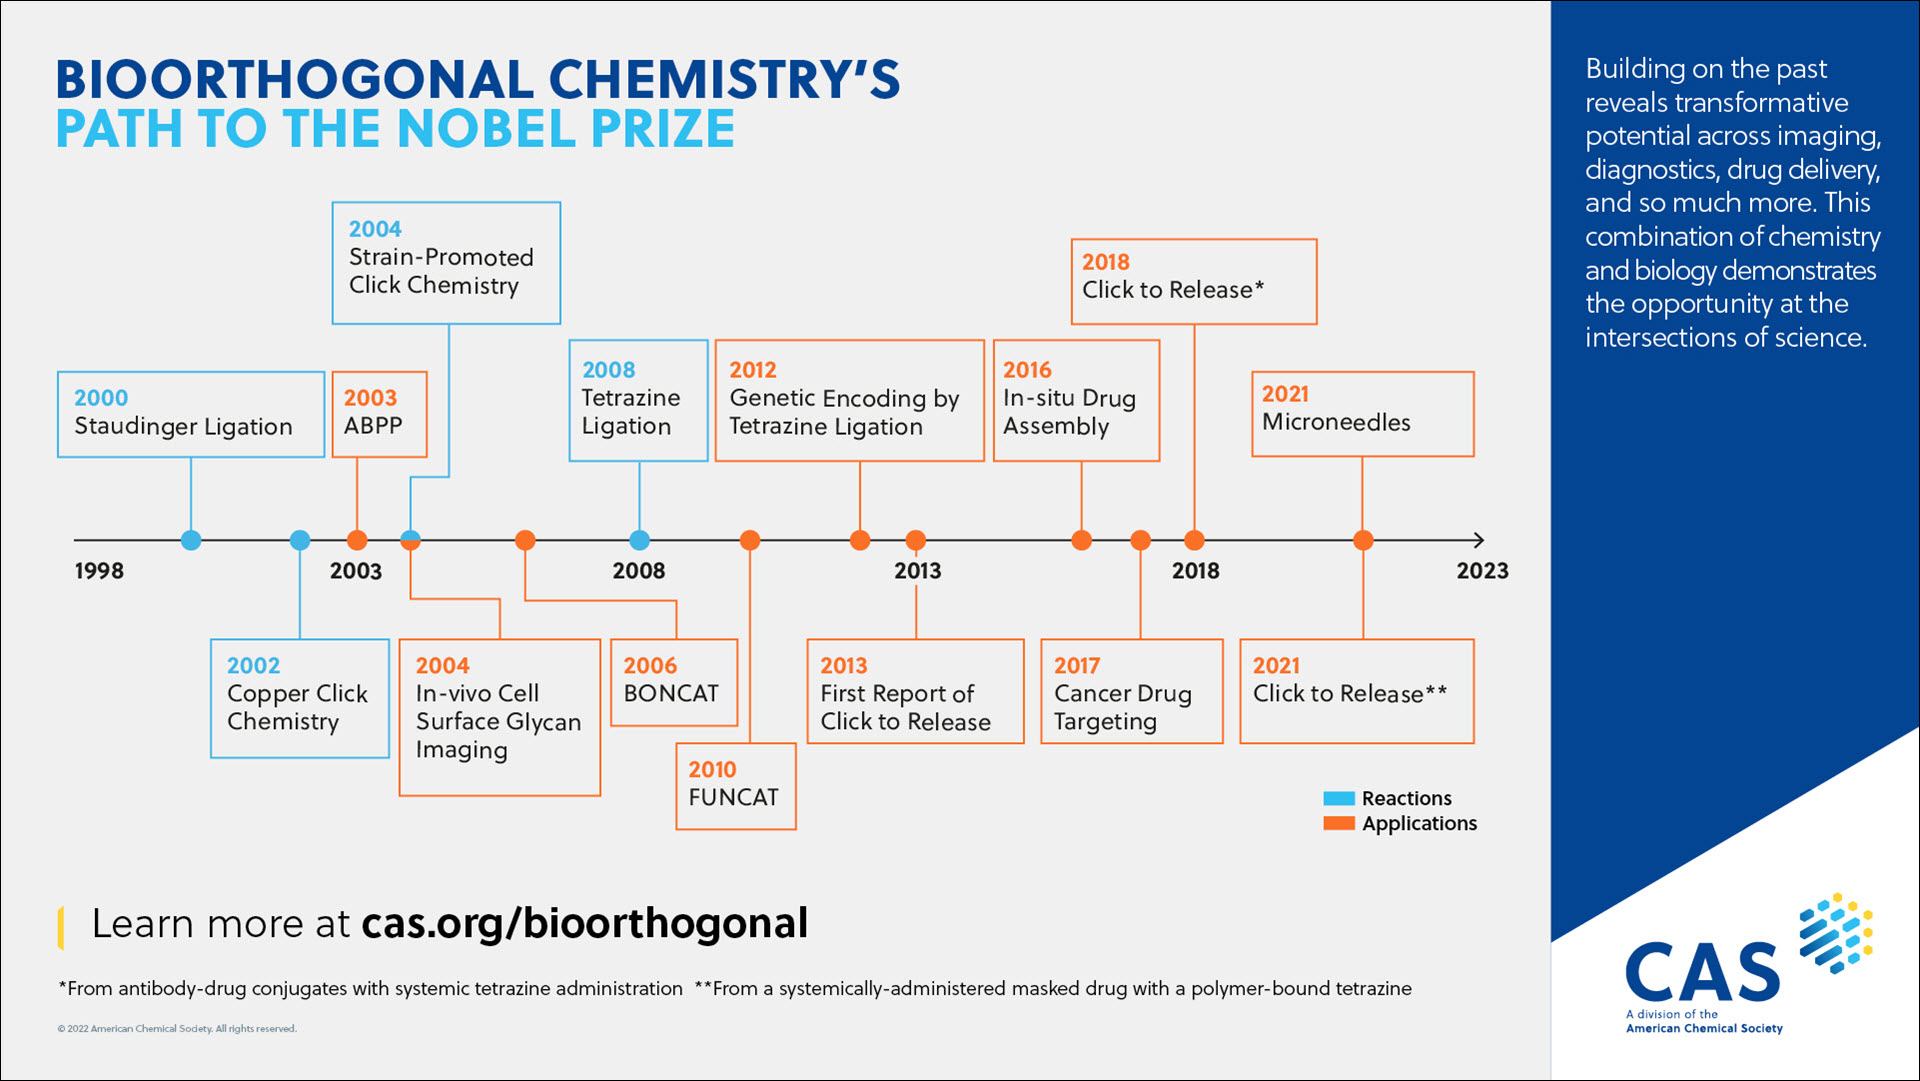 chronologie de la chimie bioorthogonale